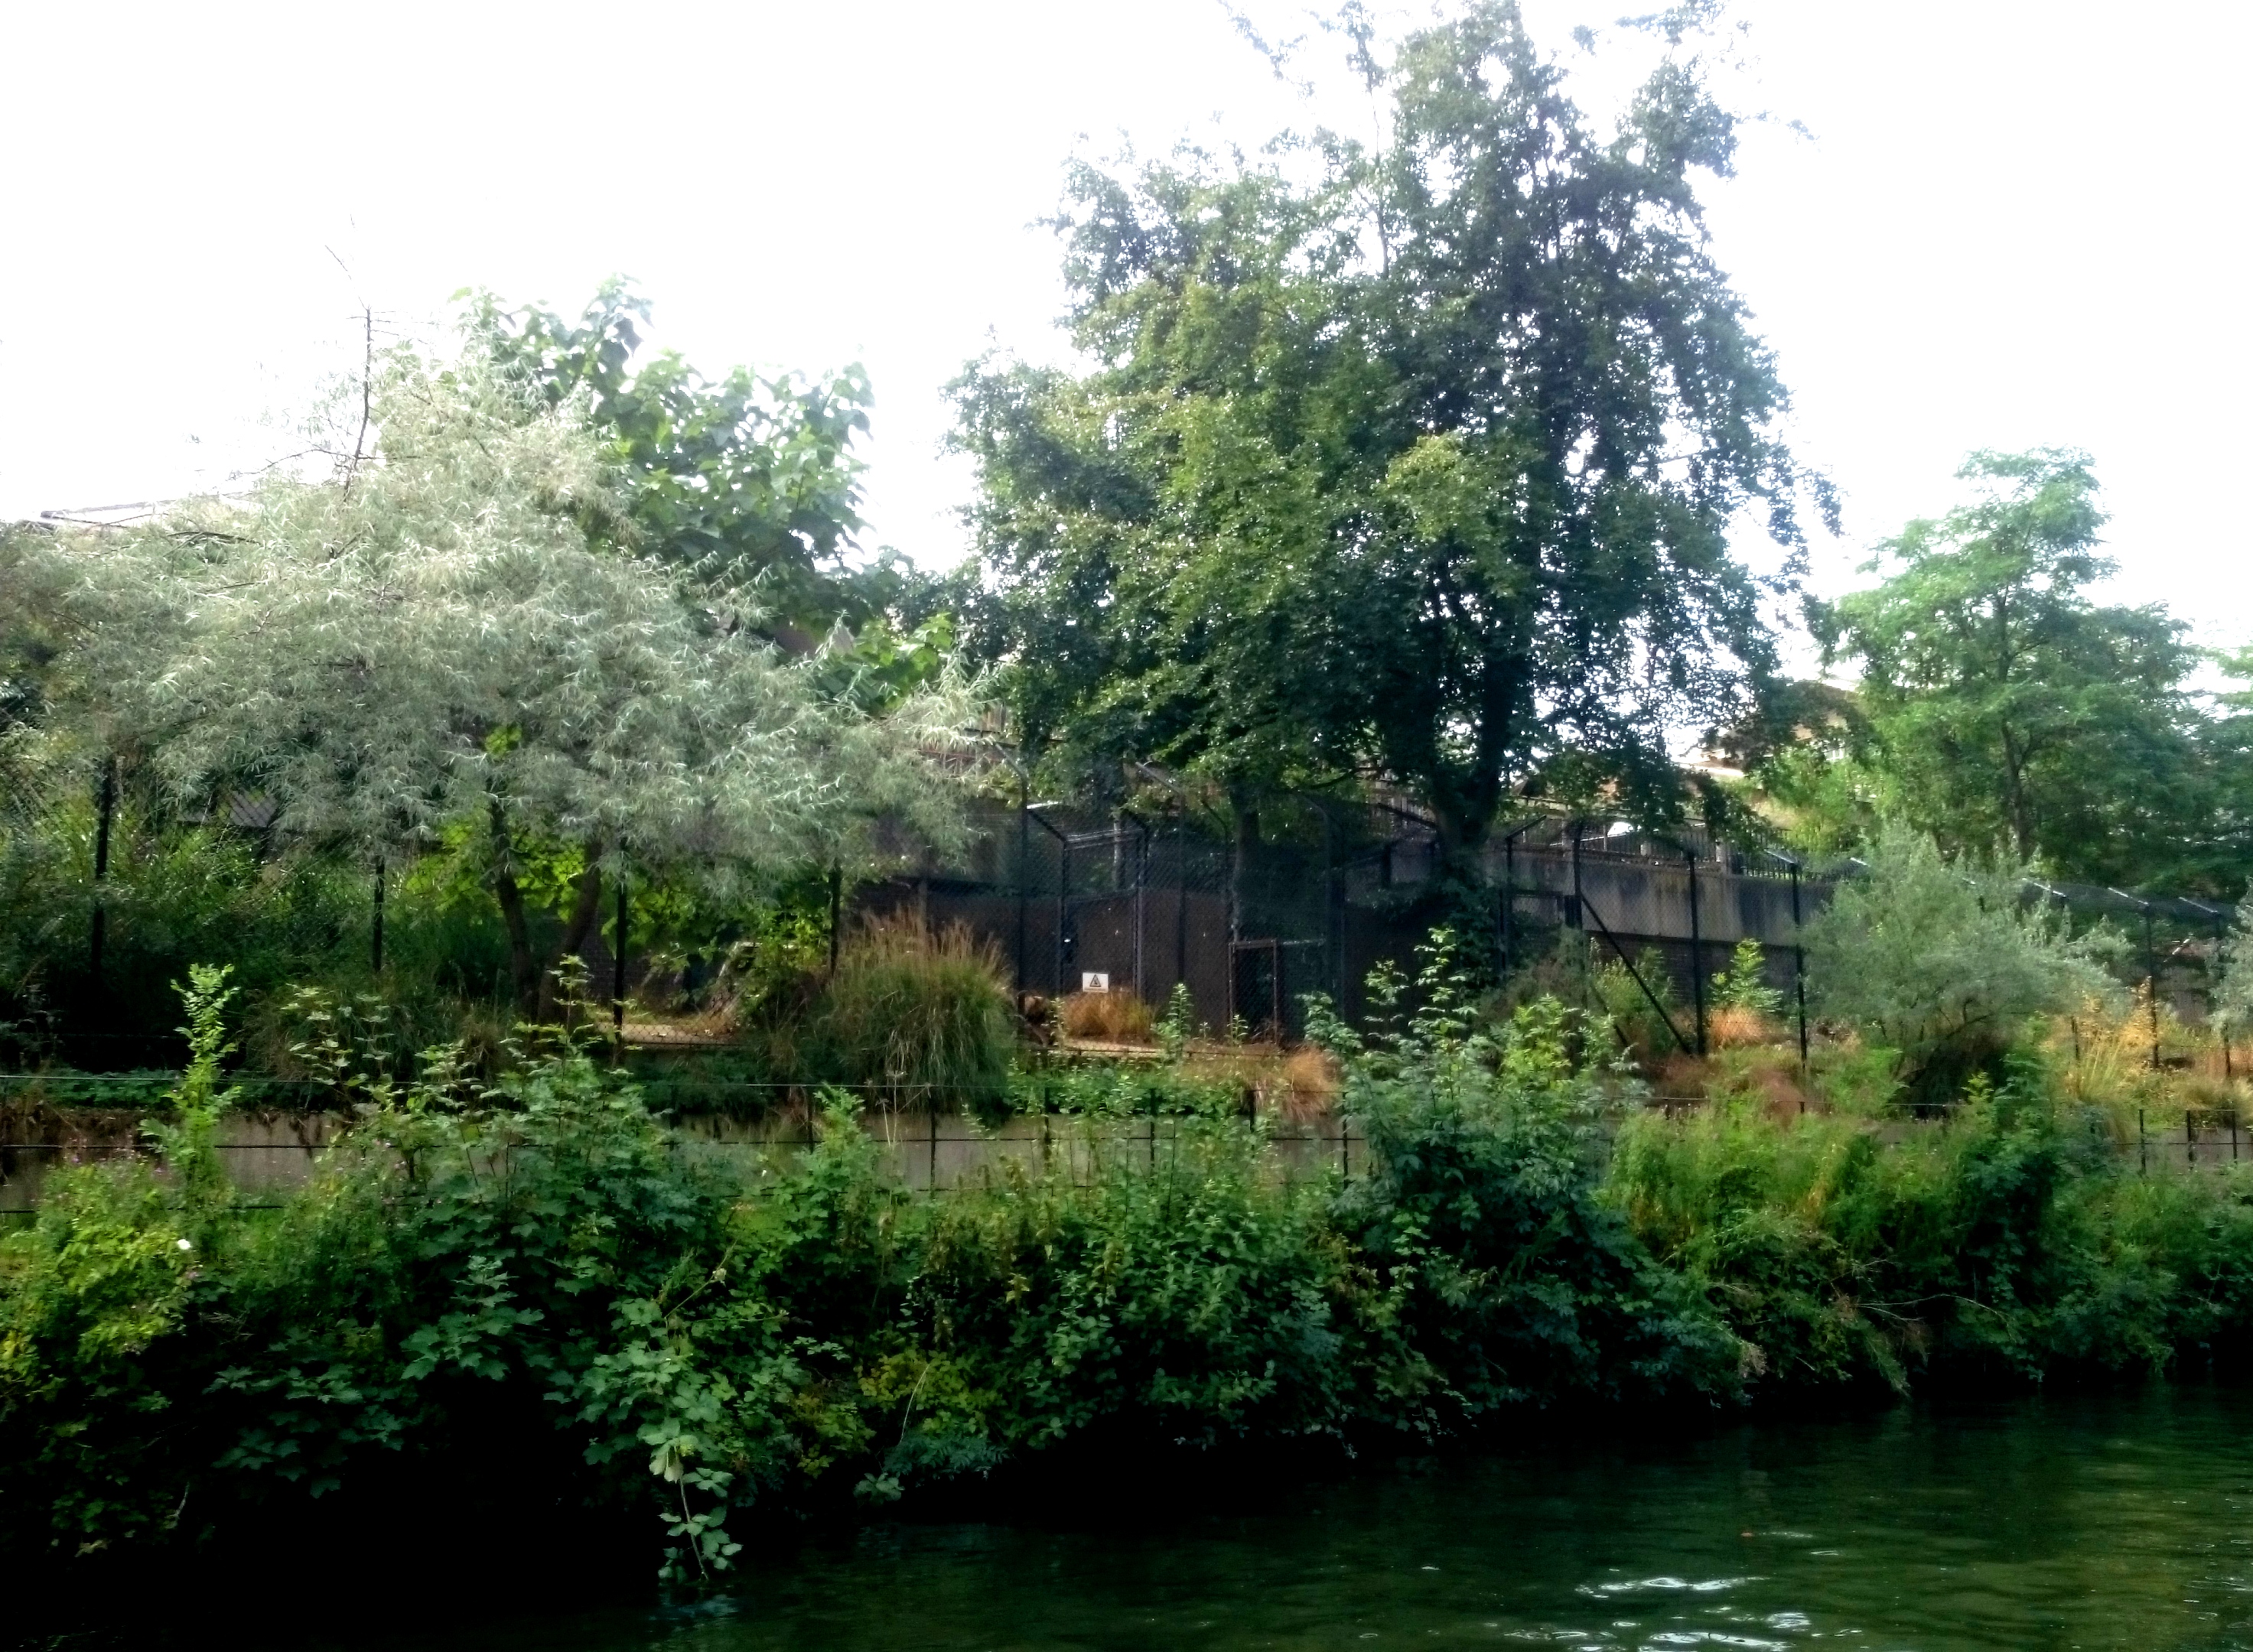 Regents Canal - London Zoo